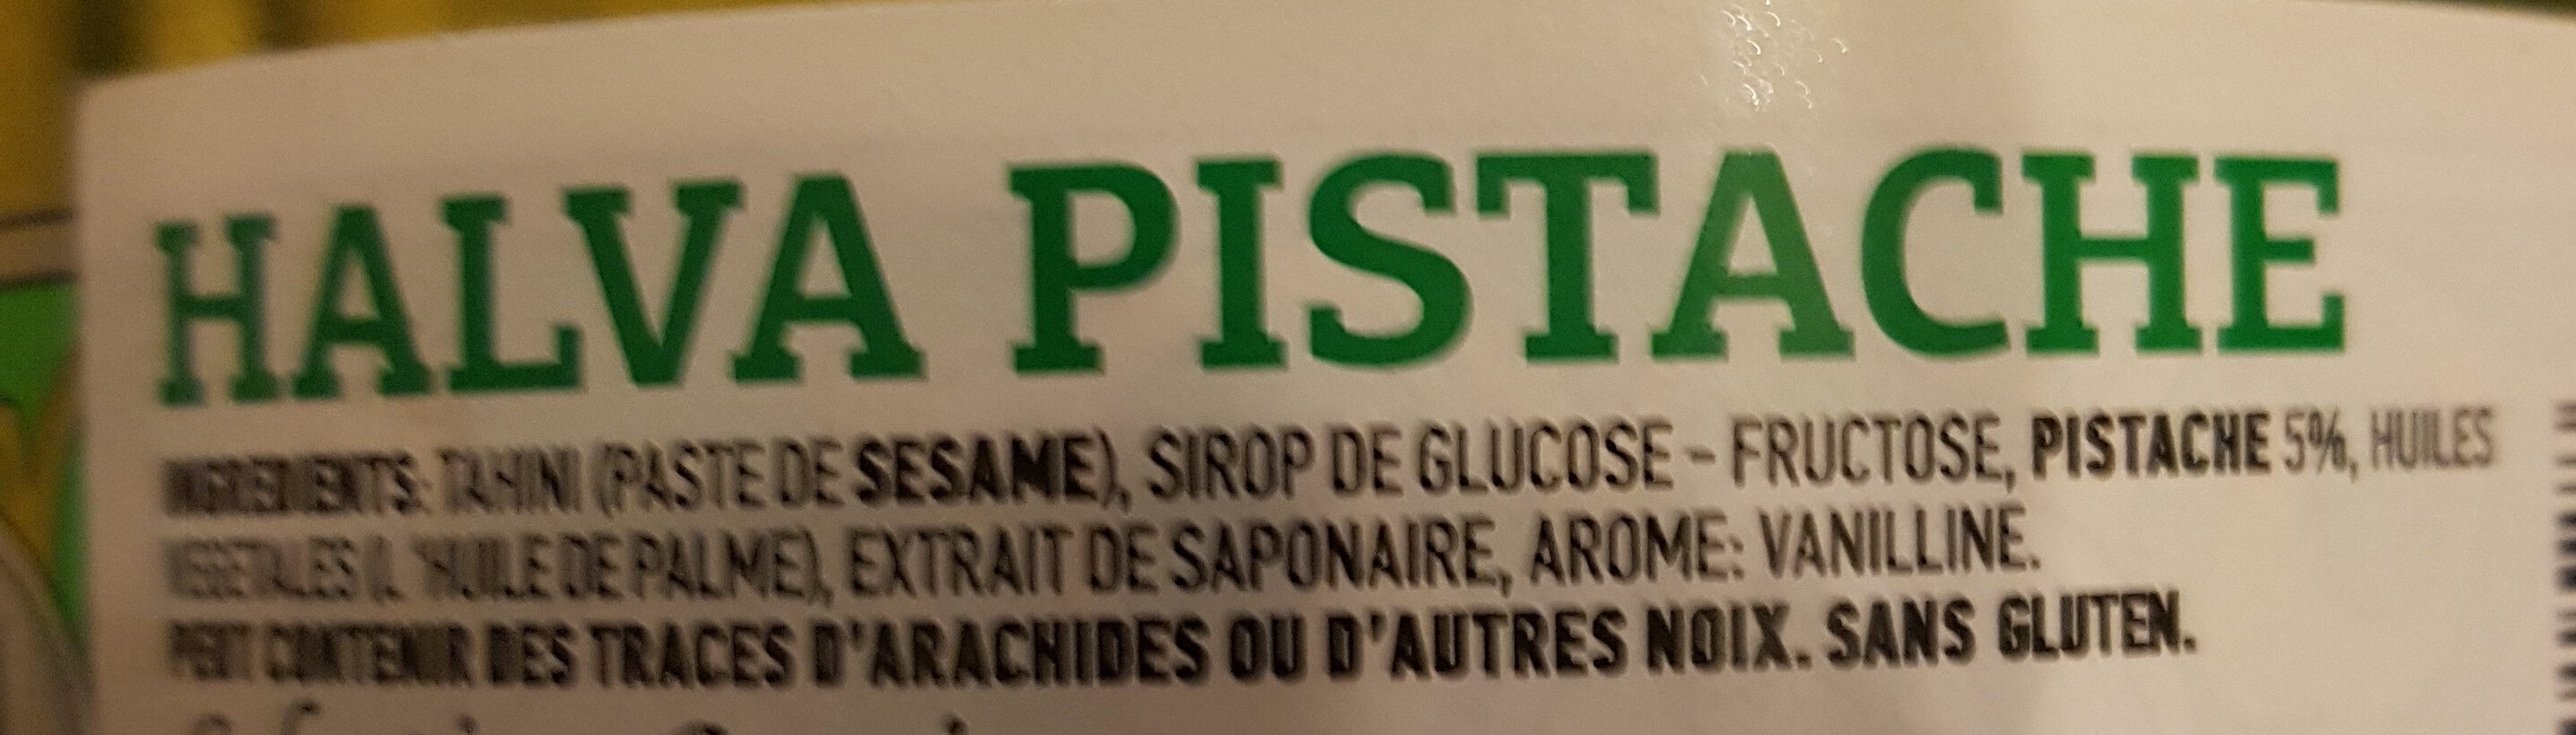 Halva pistache - Ingrédients